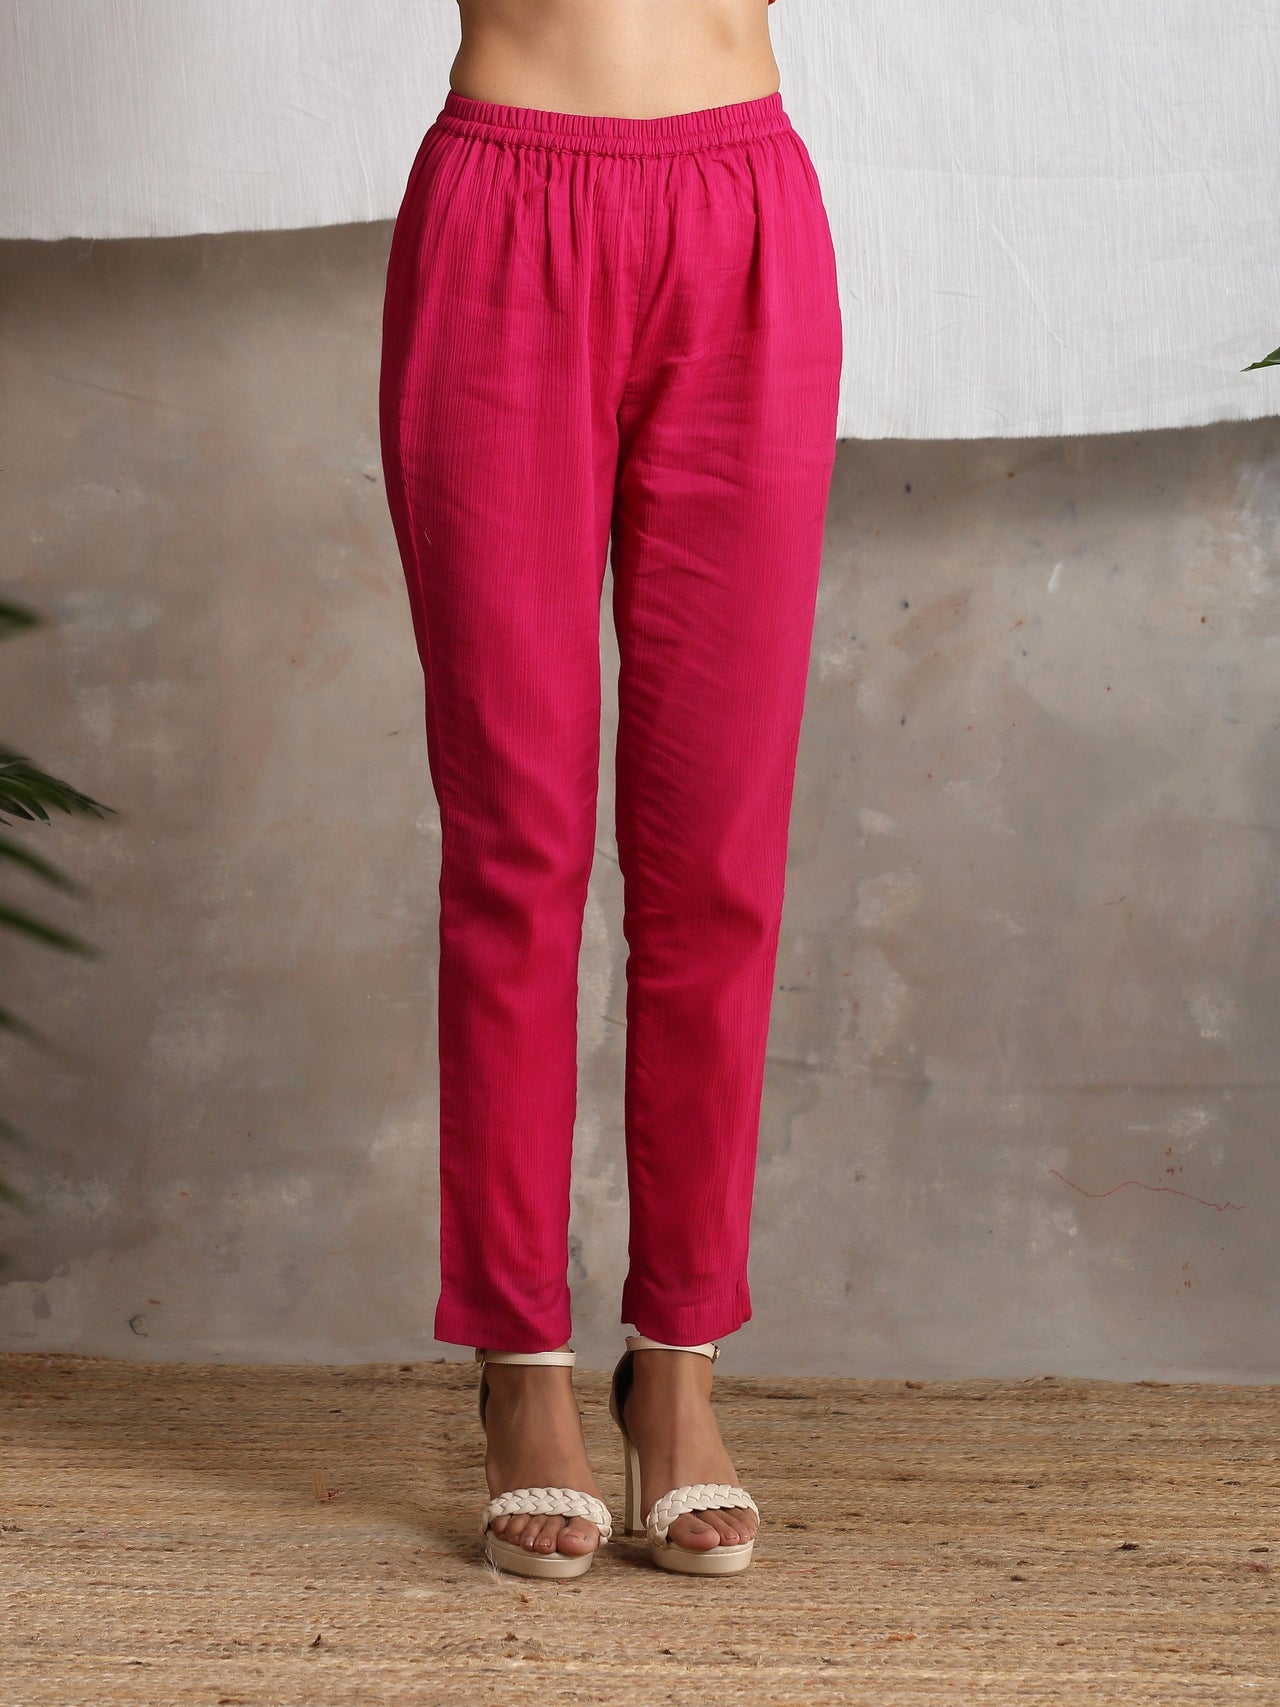 trueBrowns Pink Crinkled Pant - Distacart